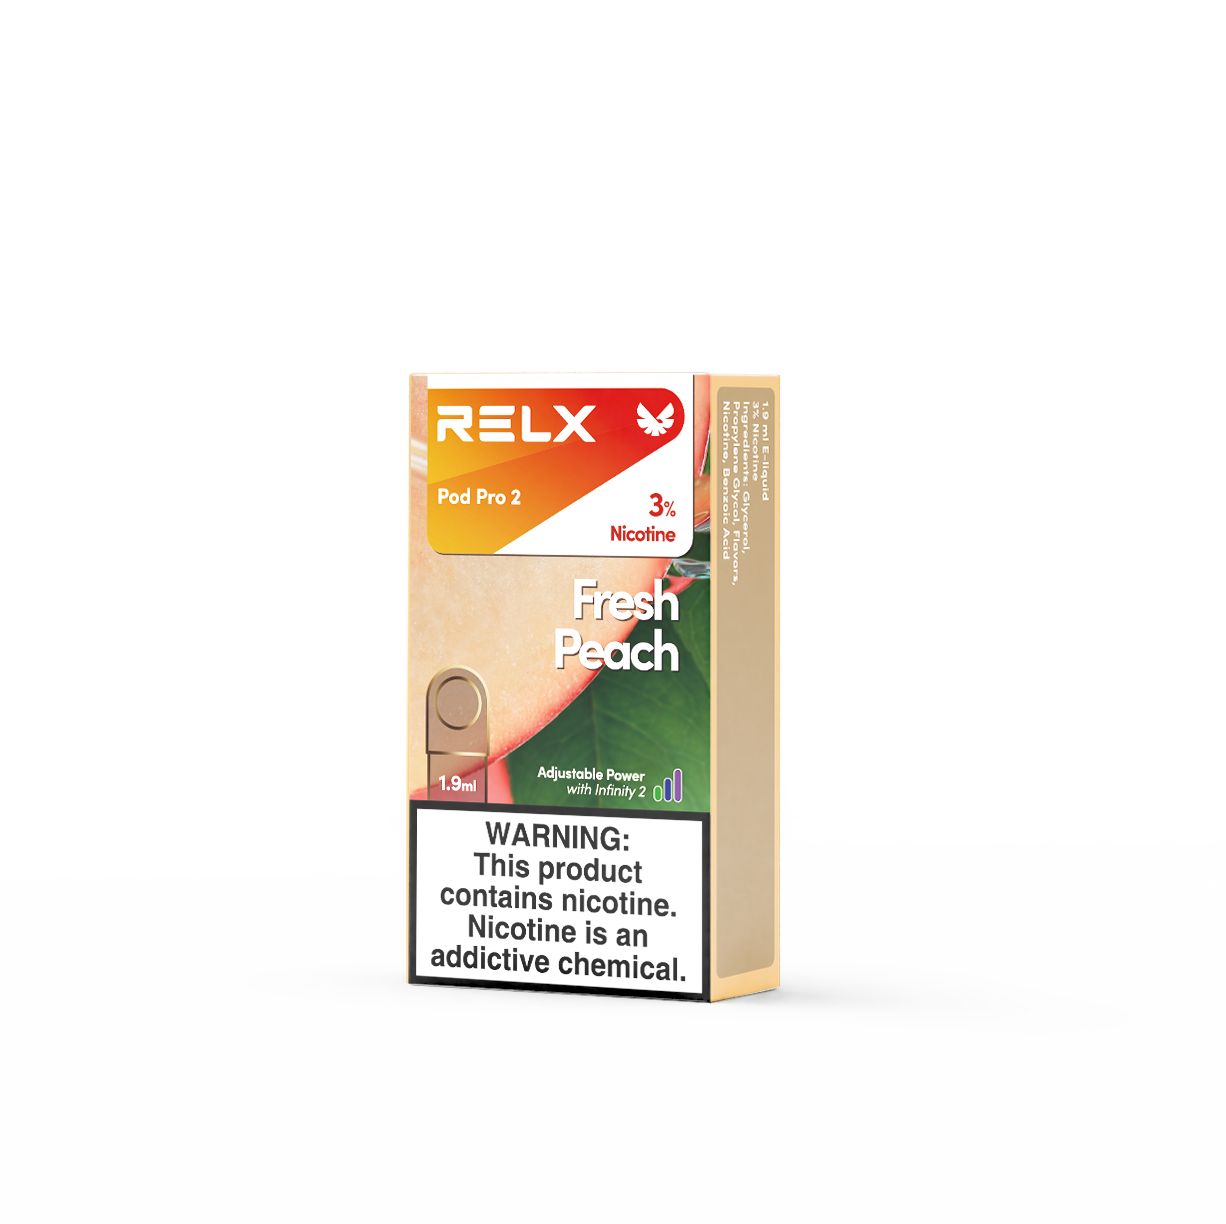 relx pods fresh peach flavor